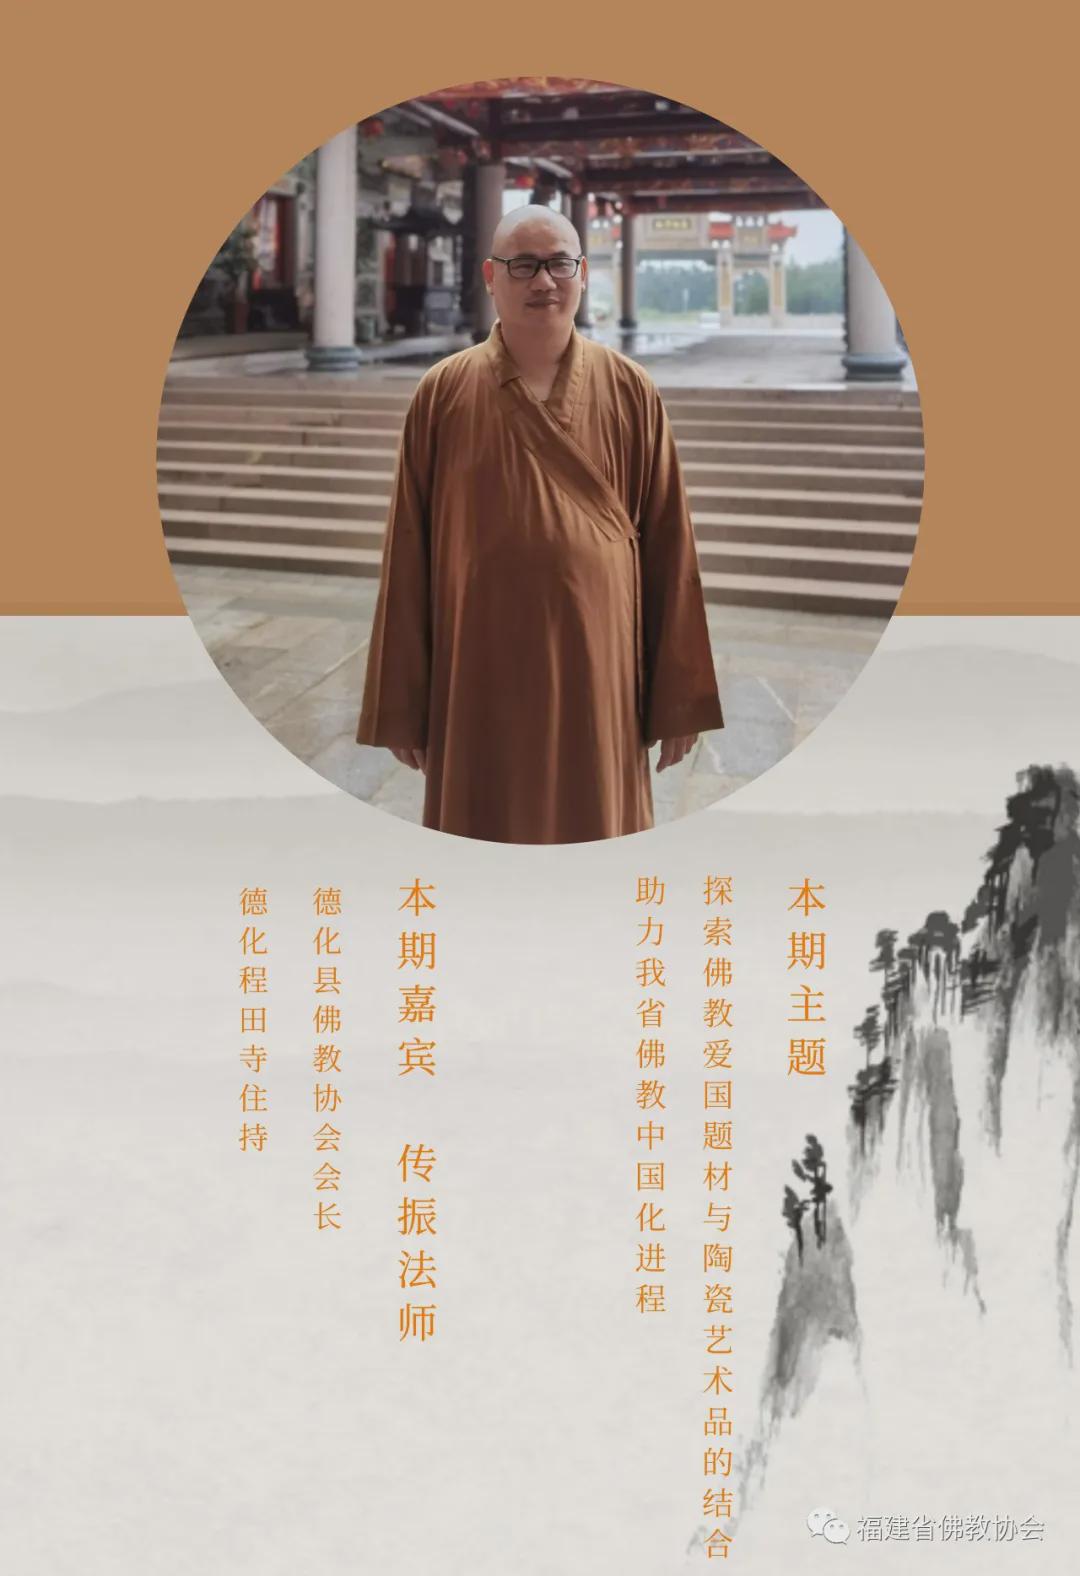 探索佛教爱国题材与陶瓷艺术品的结合 助力我省佛教中国化进程